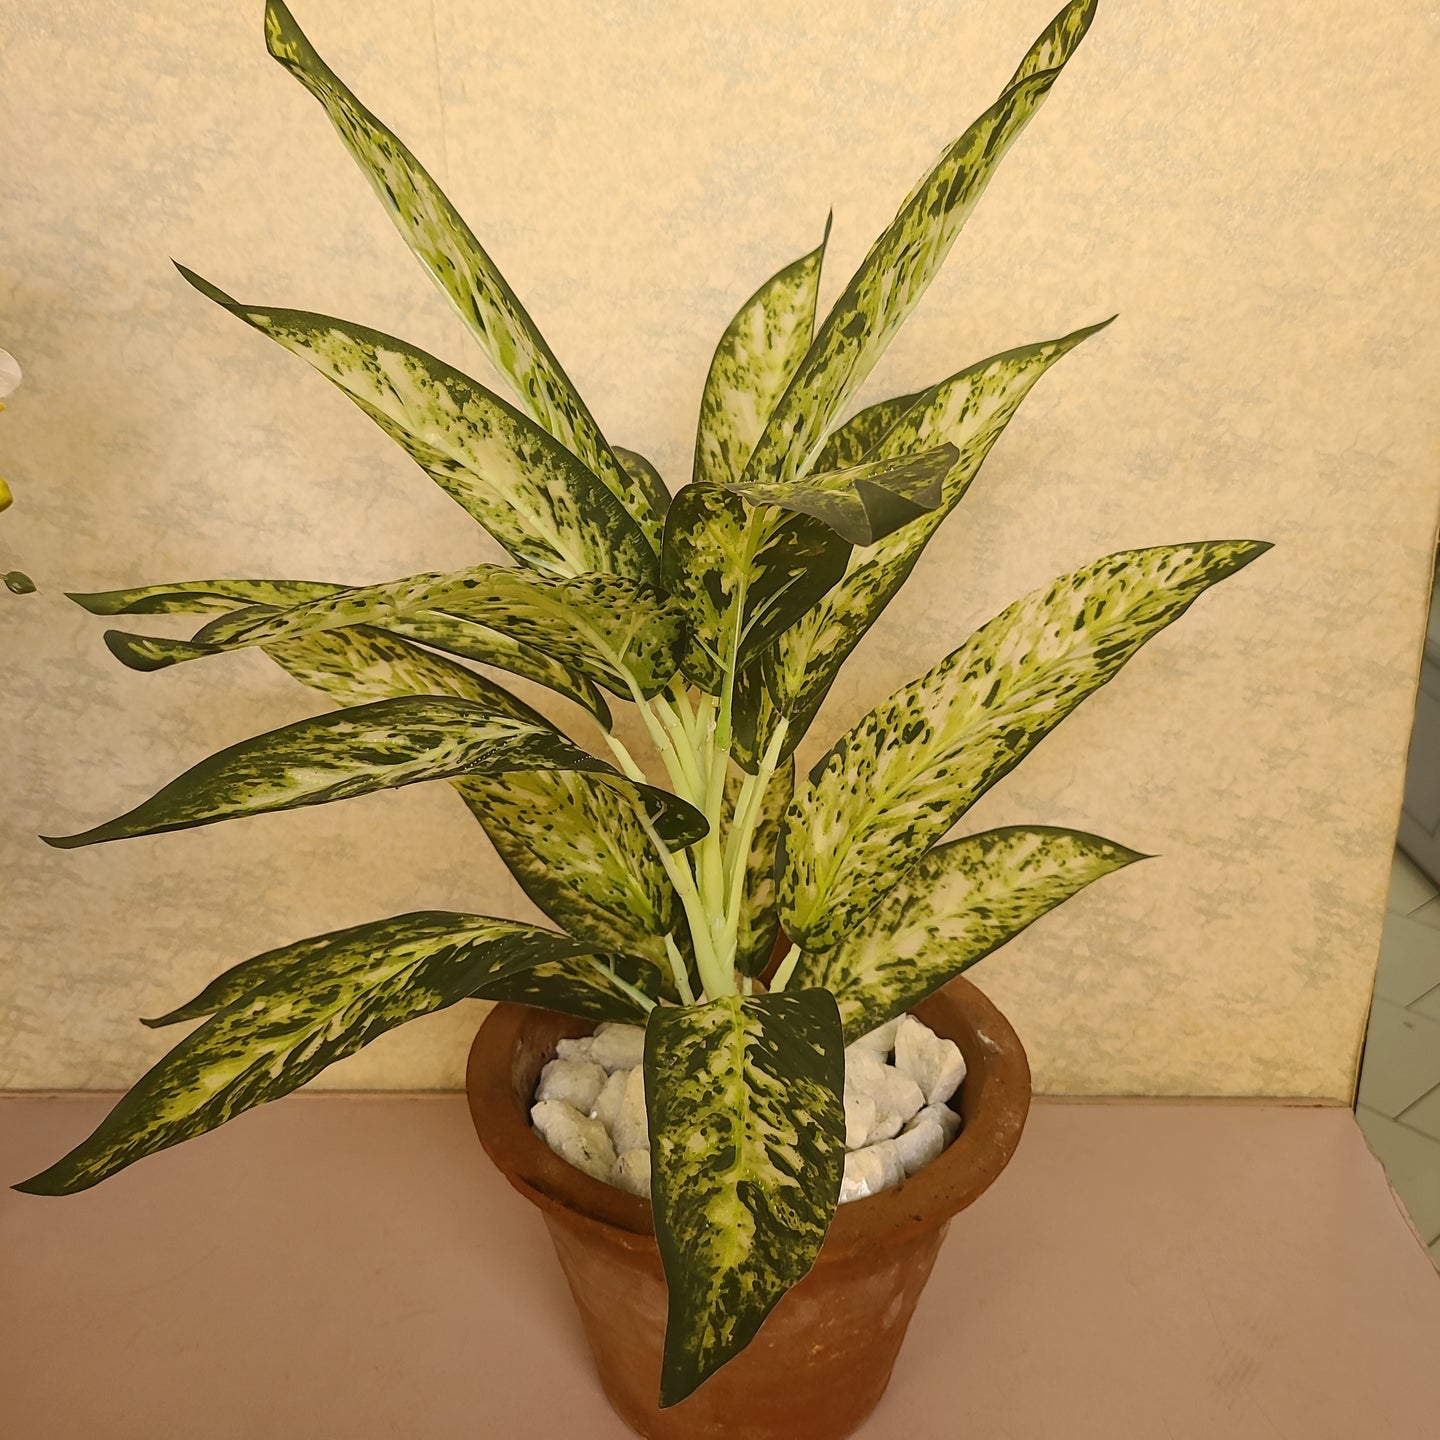 White croton plant